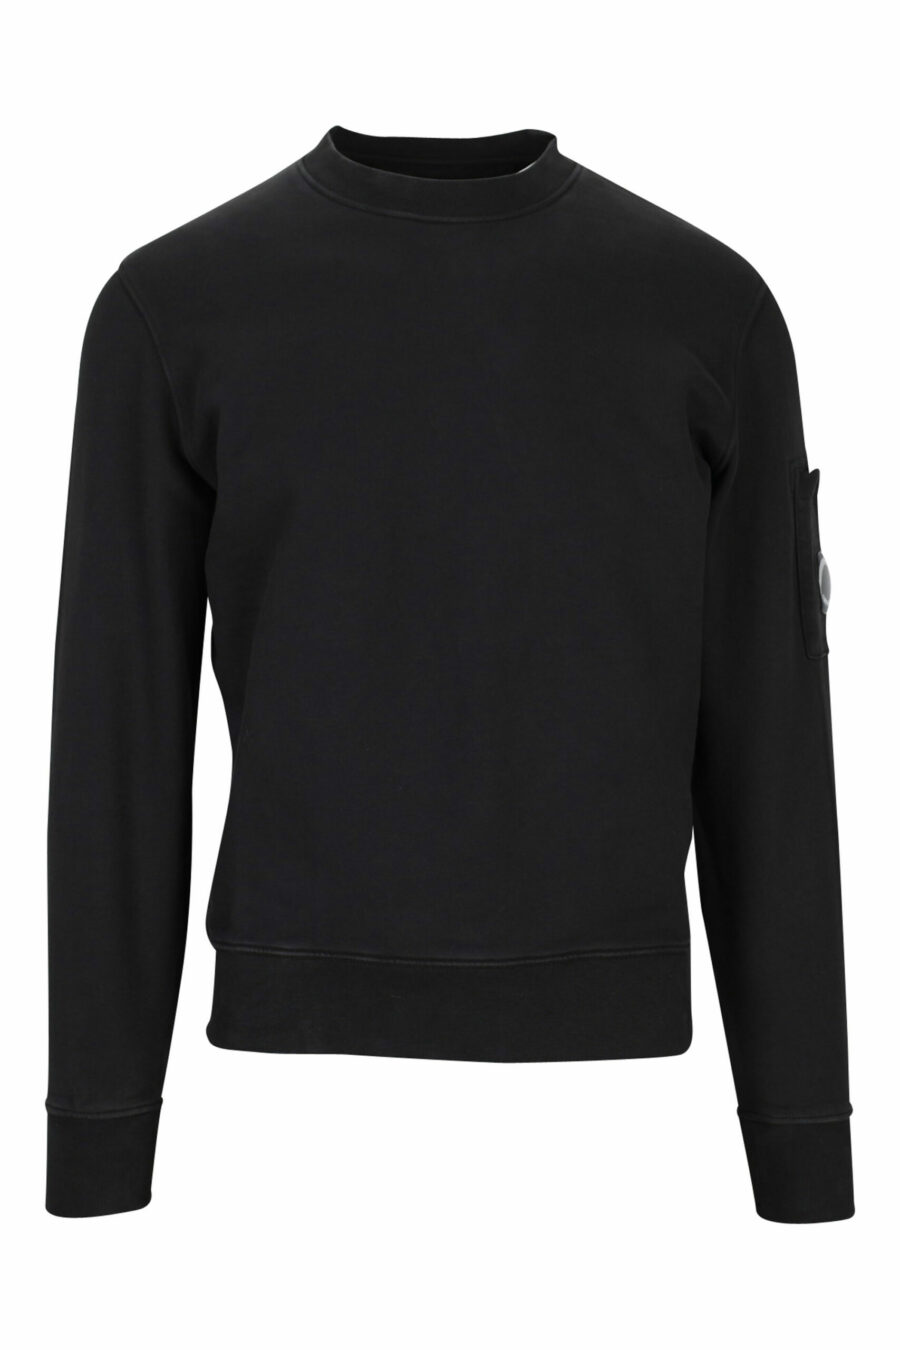 Schwarzes Sweatshirt mit seitlicher Logolinse - 7620943598650 skaliert